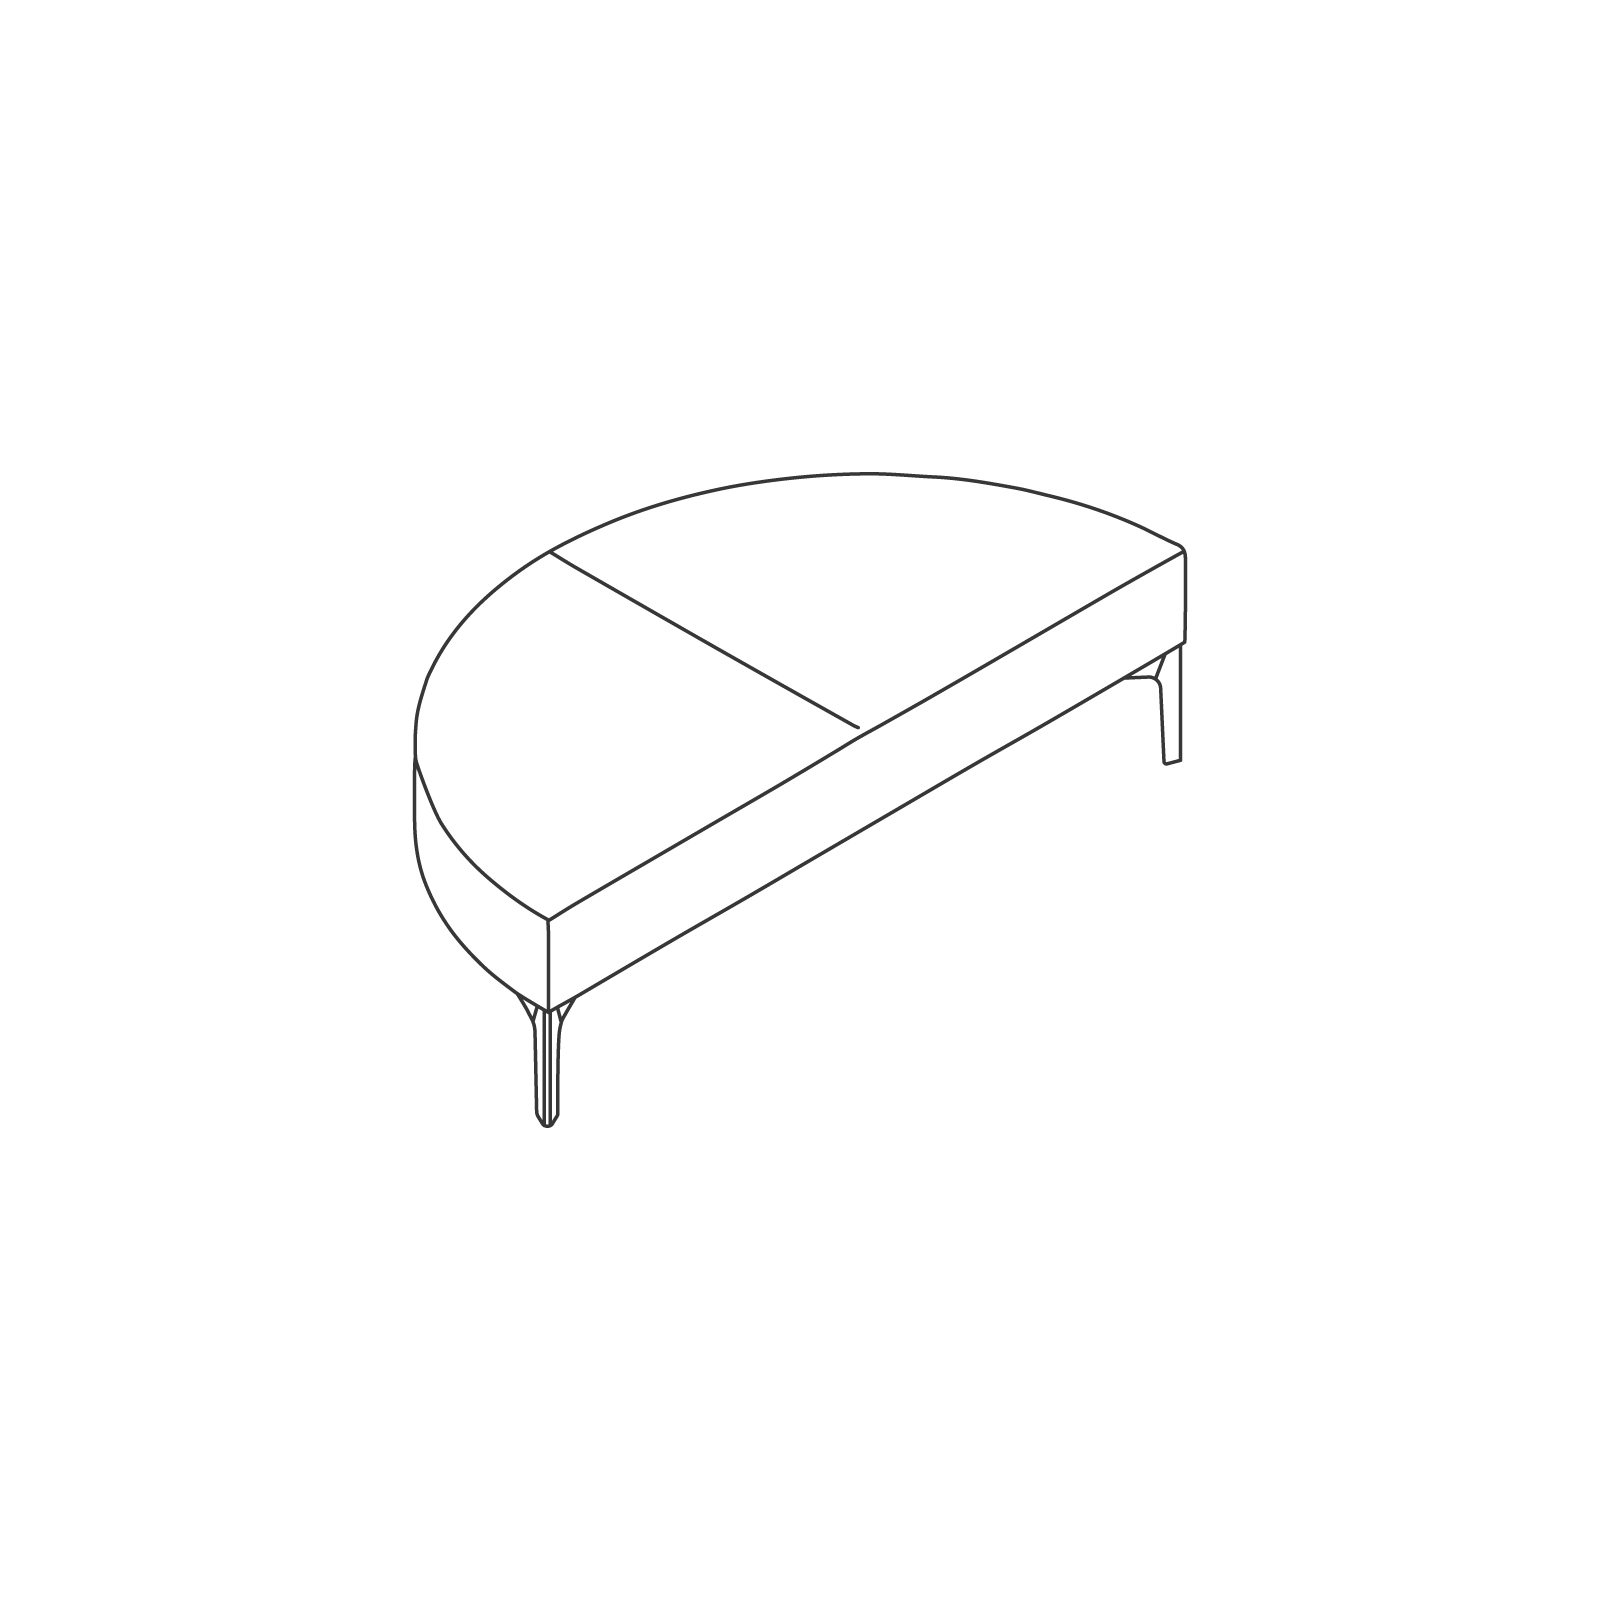 Um desenho de linha - Assento modular Symbol – Banco – Curva externa de 180°